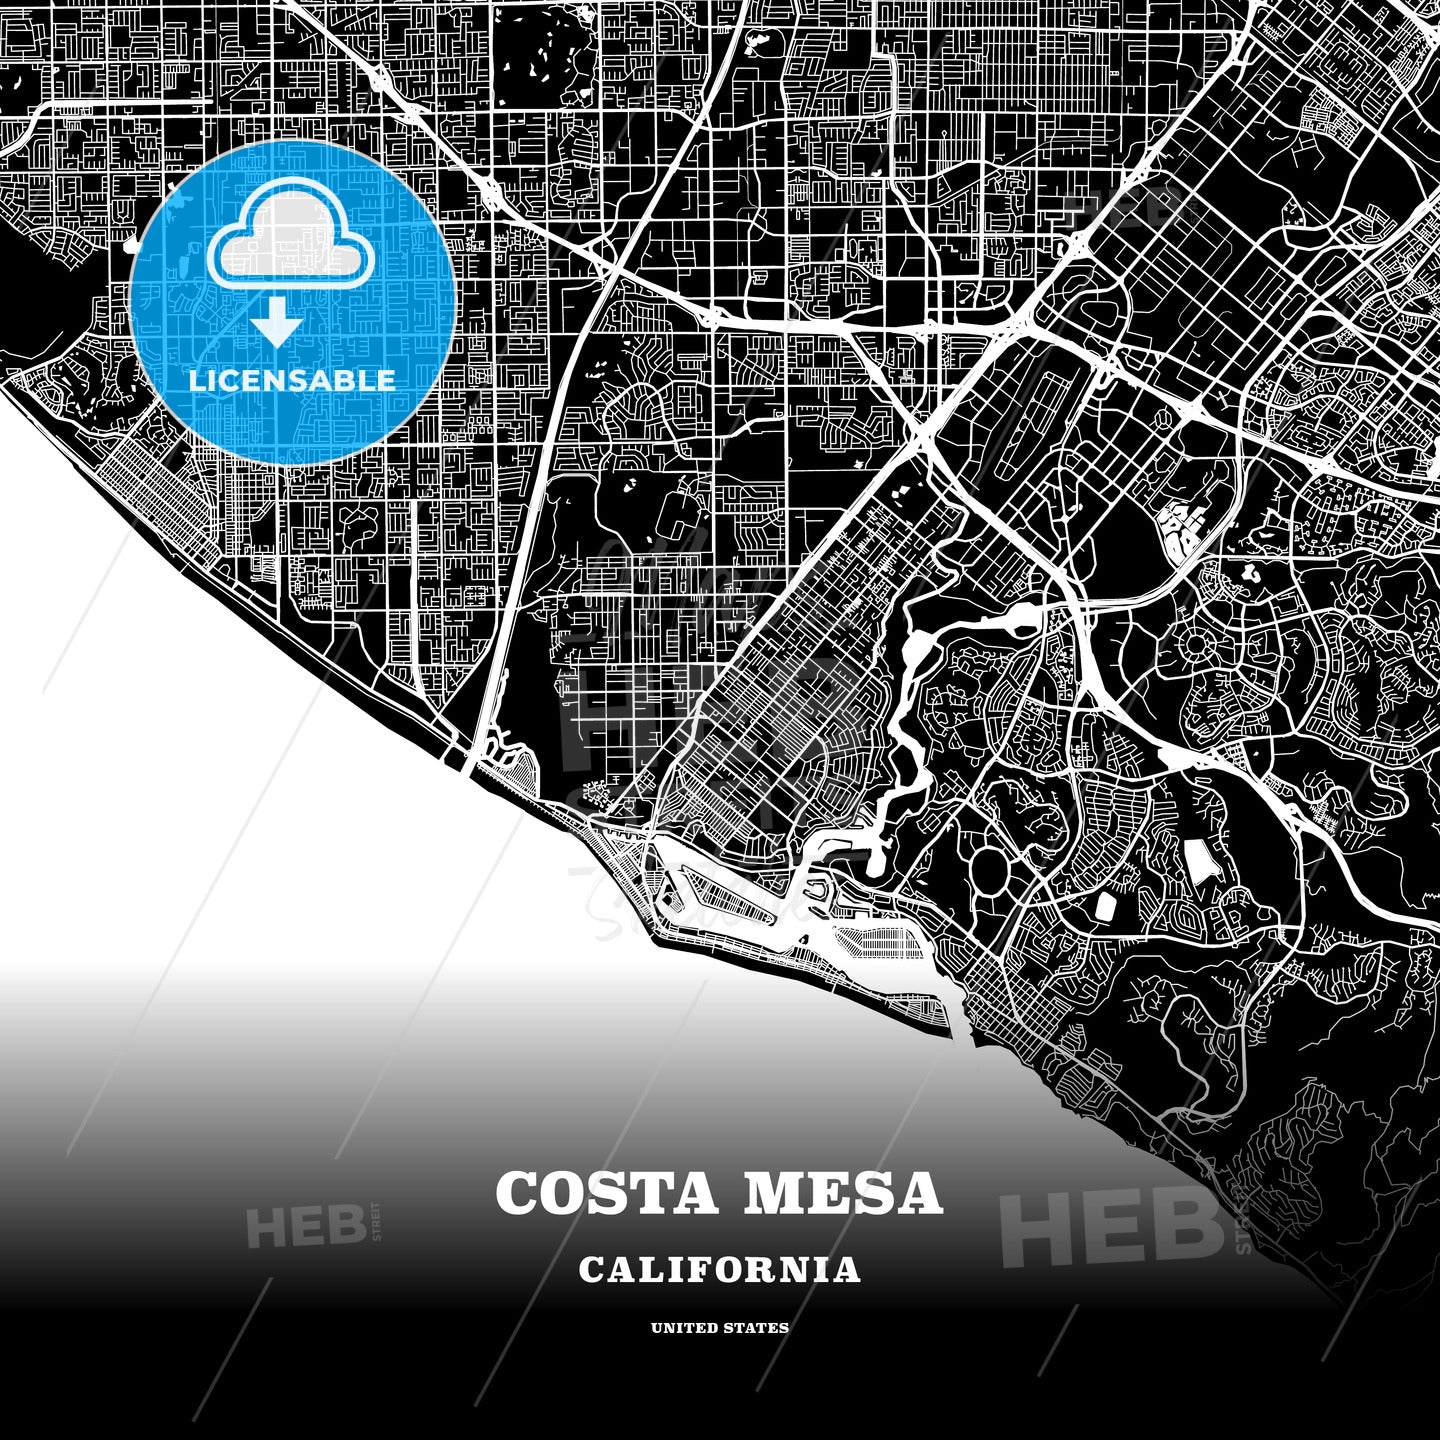 Costa Mesa, California, USA map